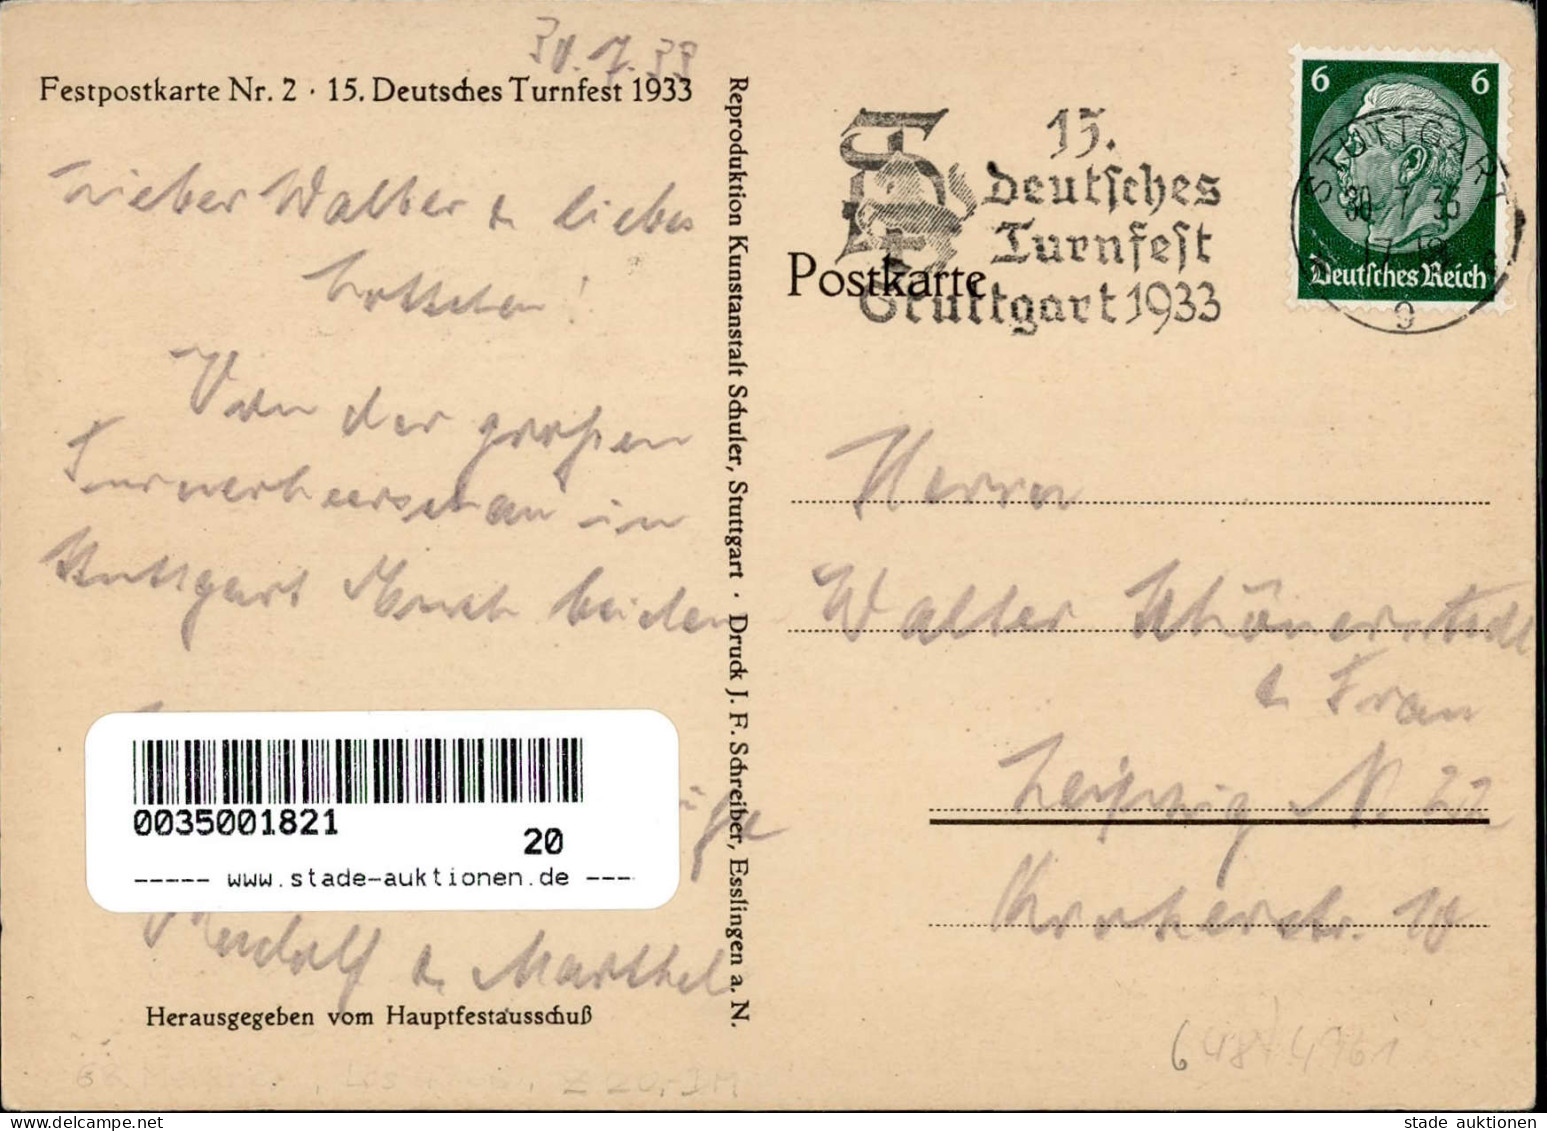 STUTTGART WK II - 15. DEUTSCHES TURNFEST 1933 Festpostkarte Nr. 2 S-o I - Weltkrieg 1939-45